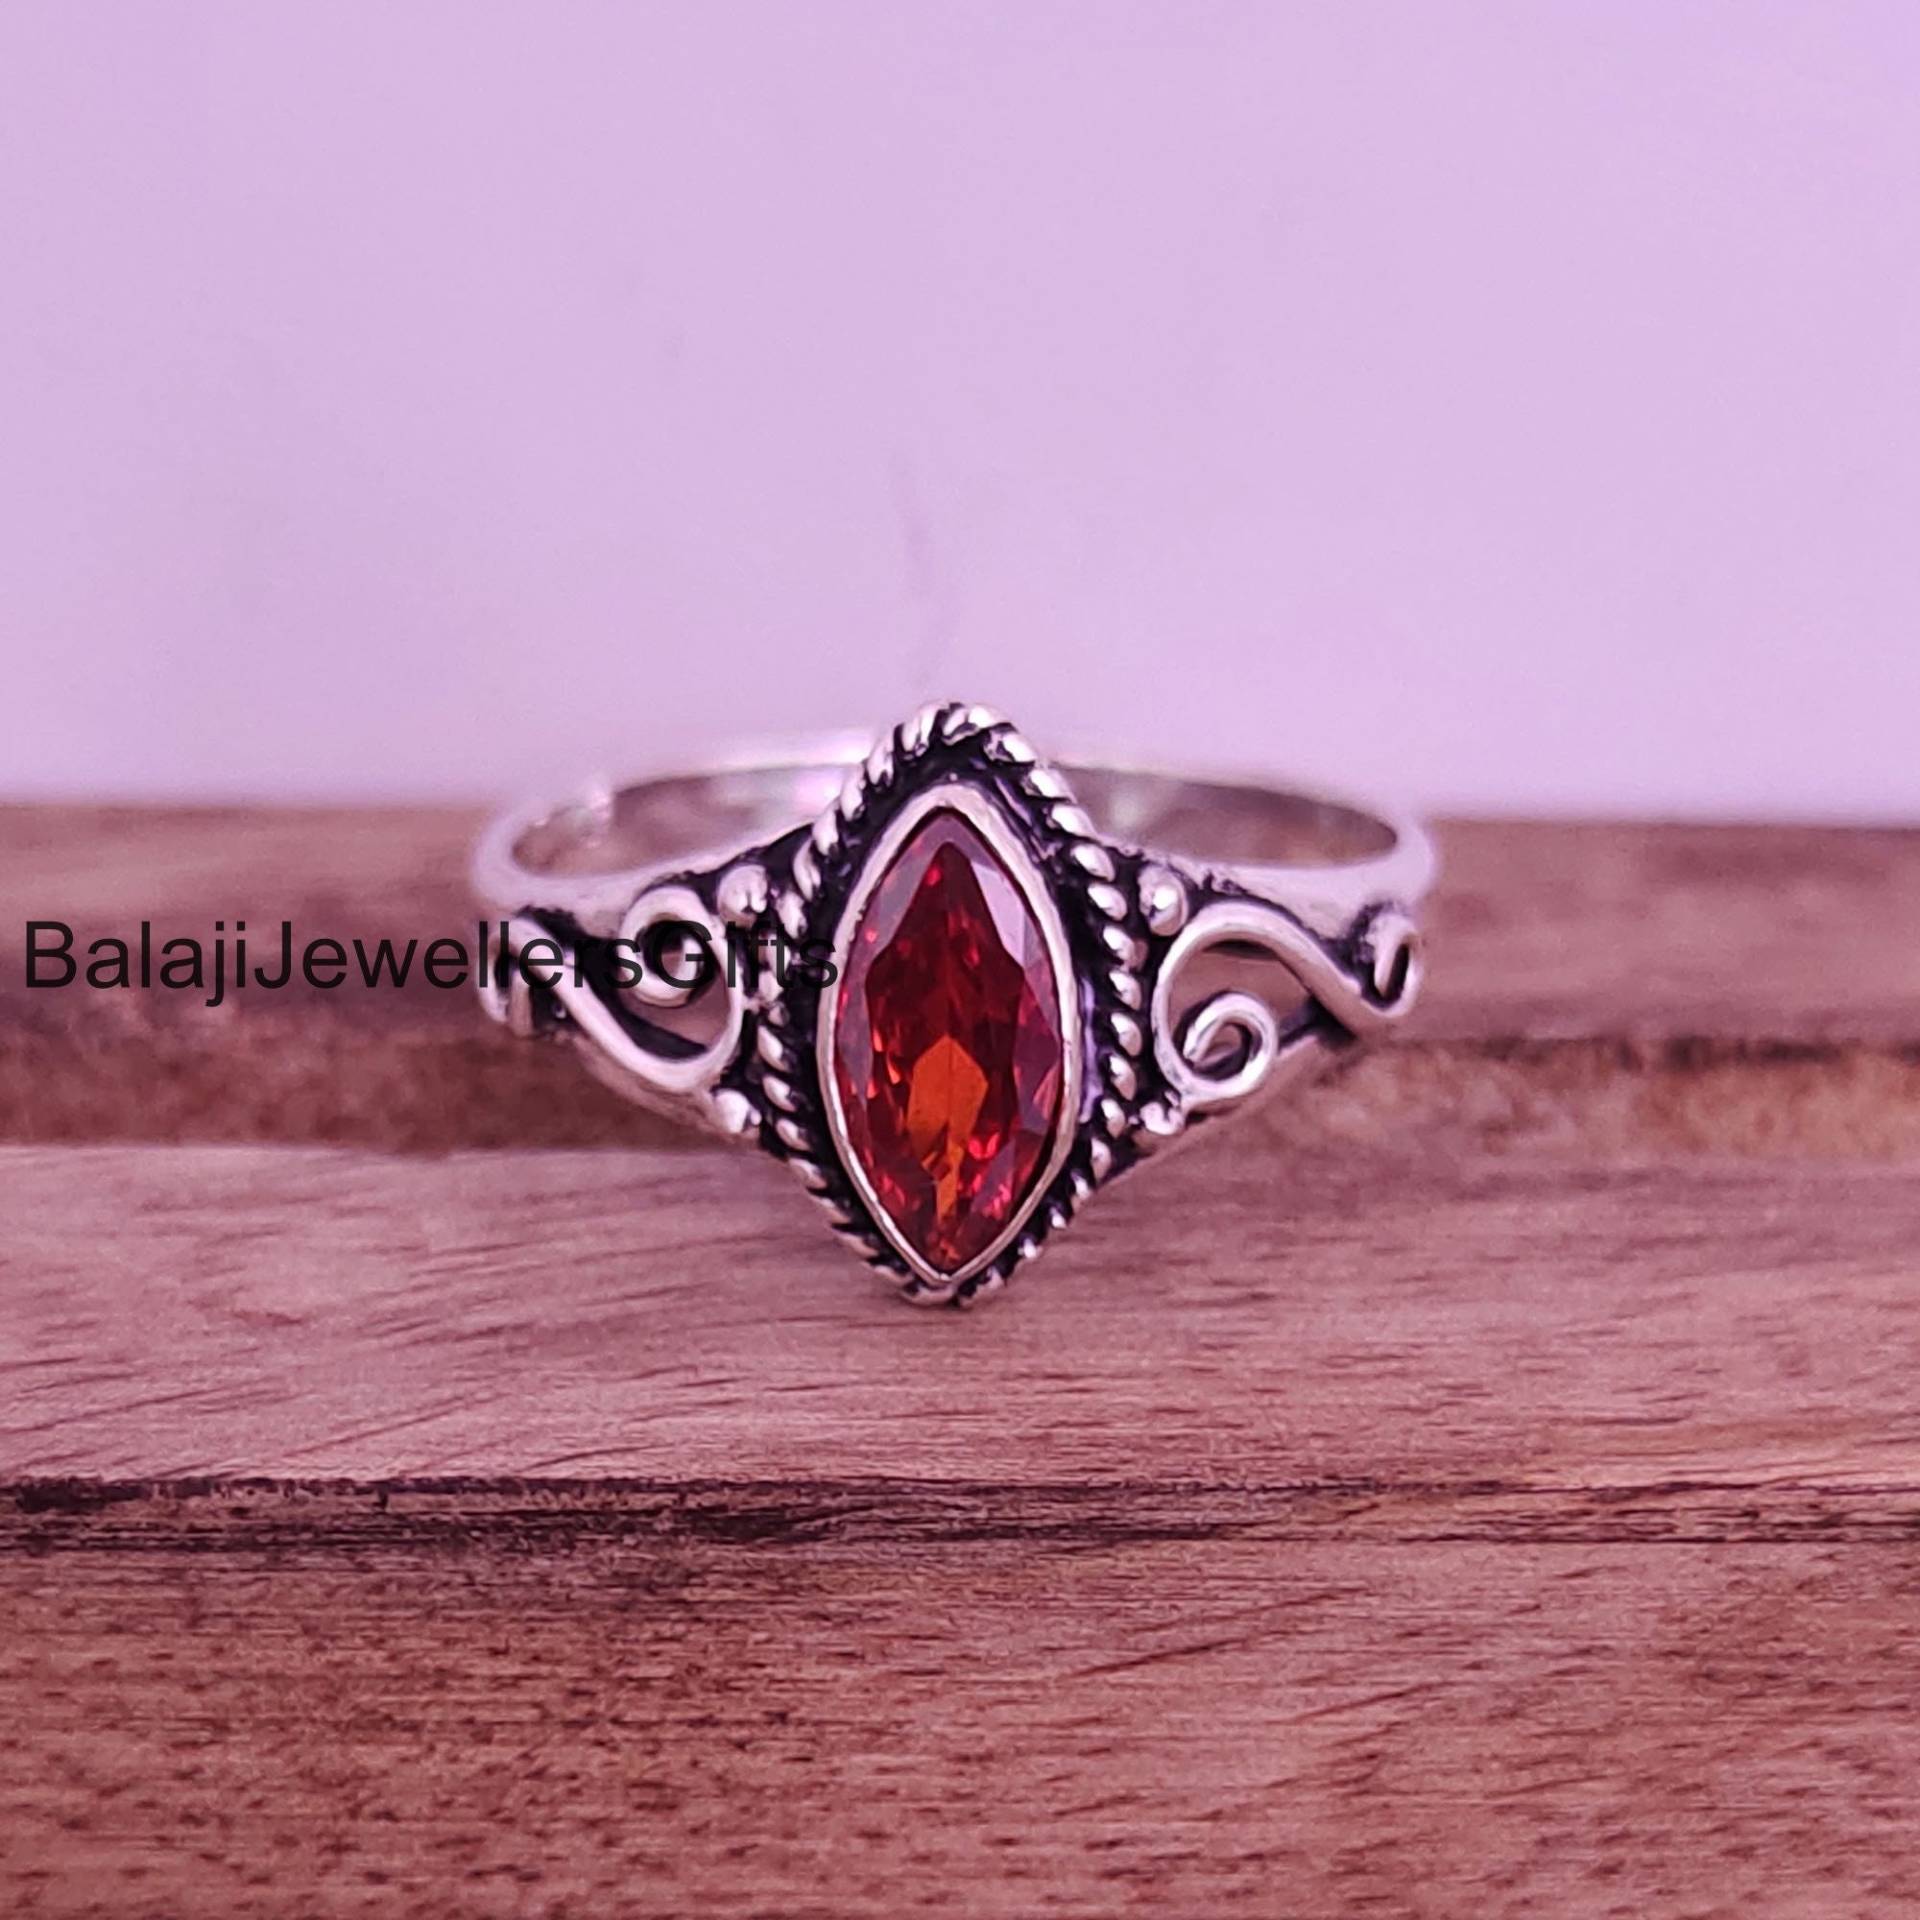 Granat Edelstein Ring, 925 Sterling Silber Ringe Für Frauen, Statement Handgemachter Minimalist Midi Ringsk575 von BalajiJewellersGifts